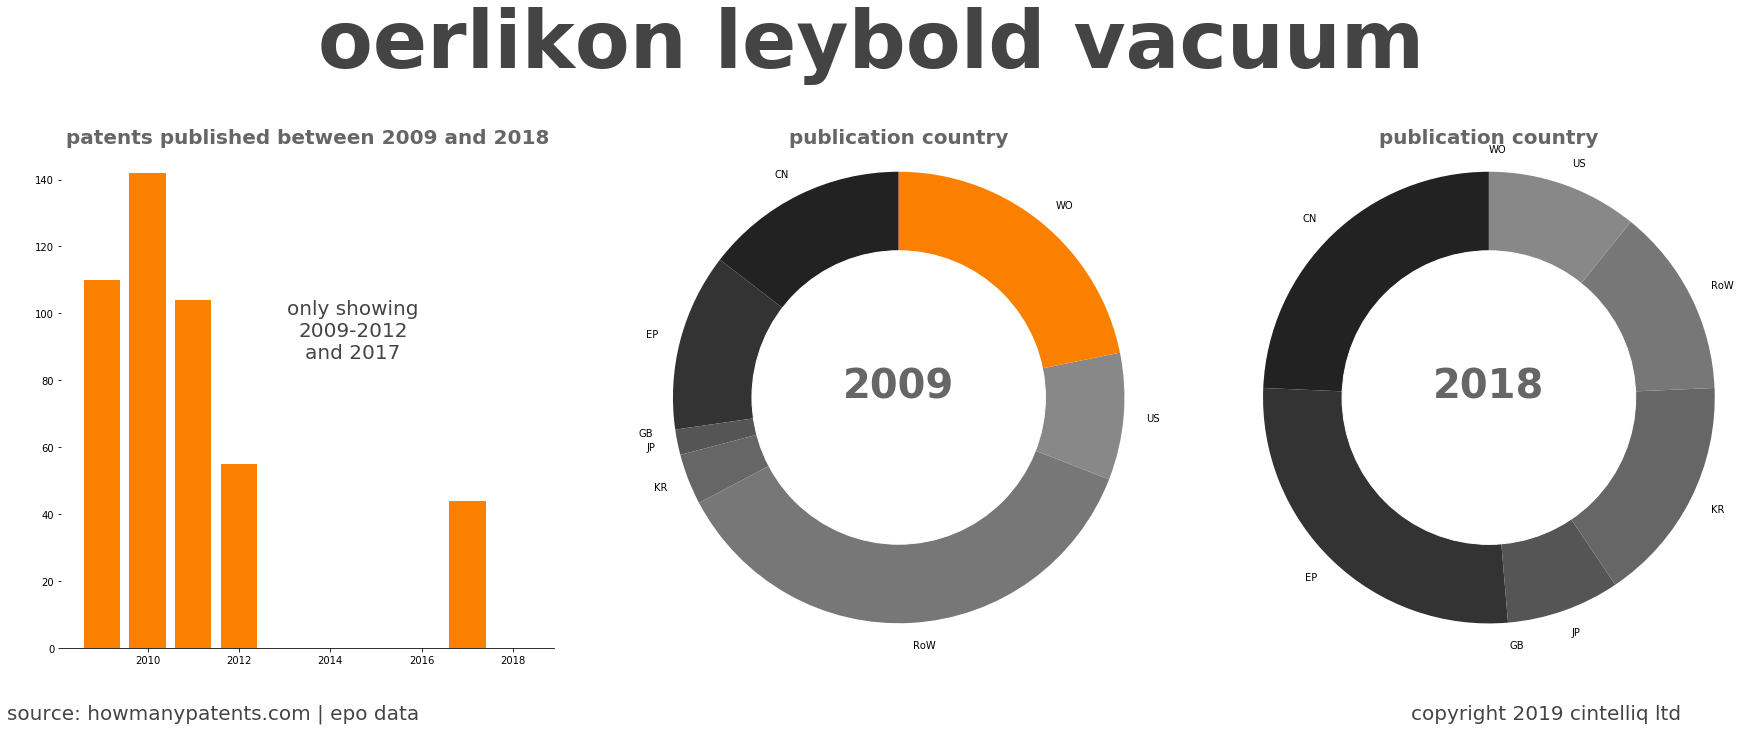 summary of patents for Oerlikon Leybold Vacuum